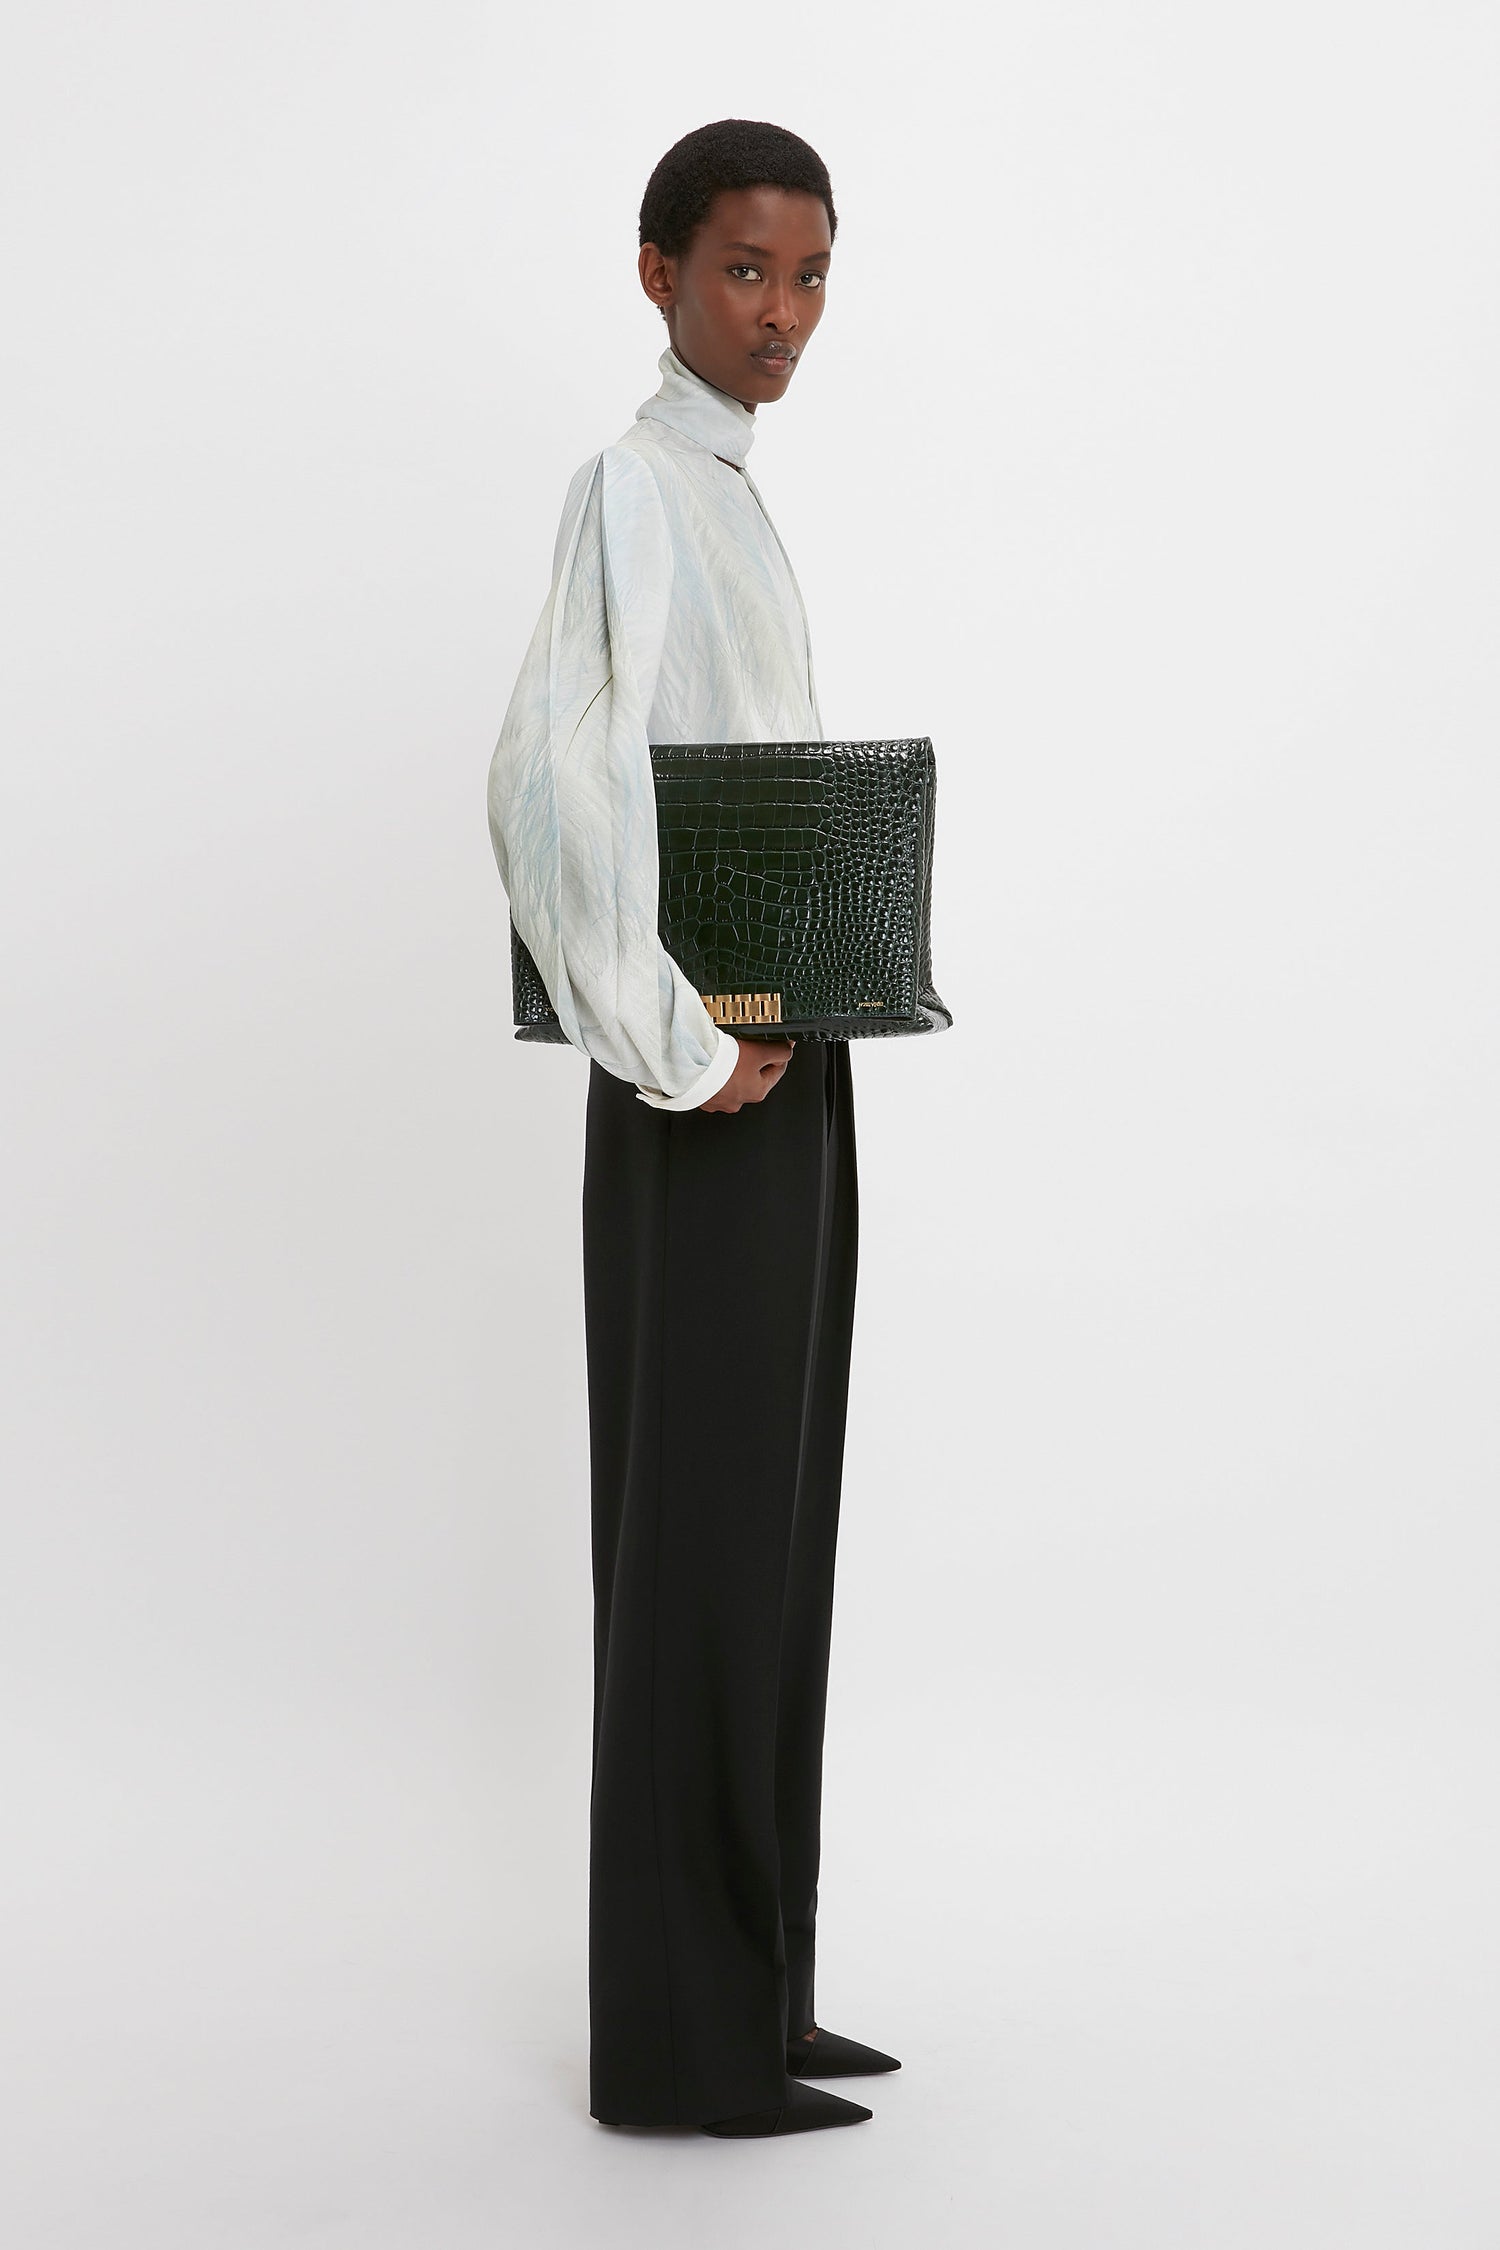 Buy Women Burgundy Croc Embossed Sling Bag online